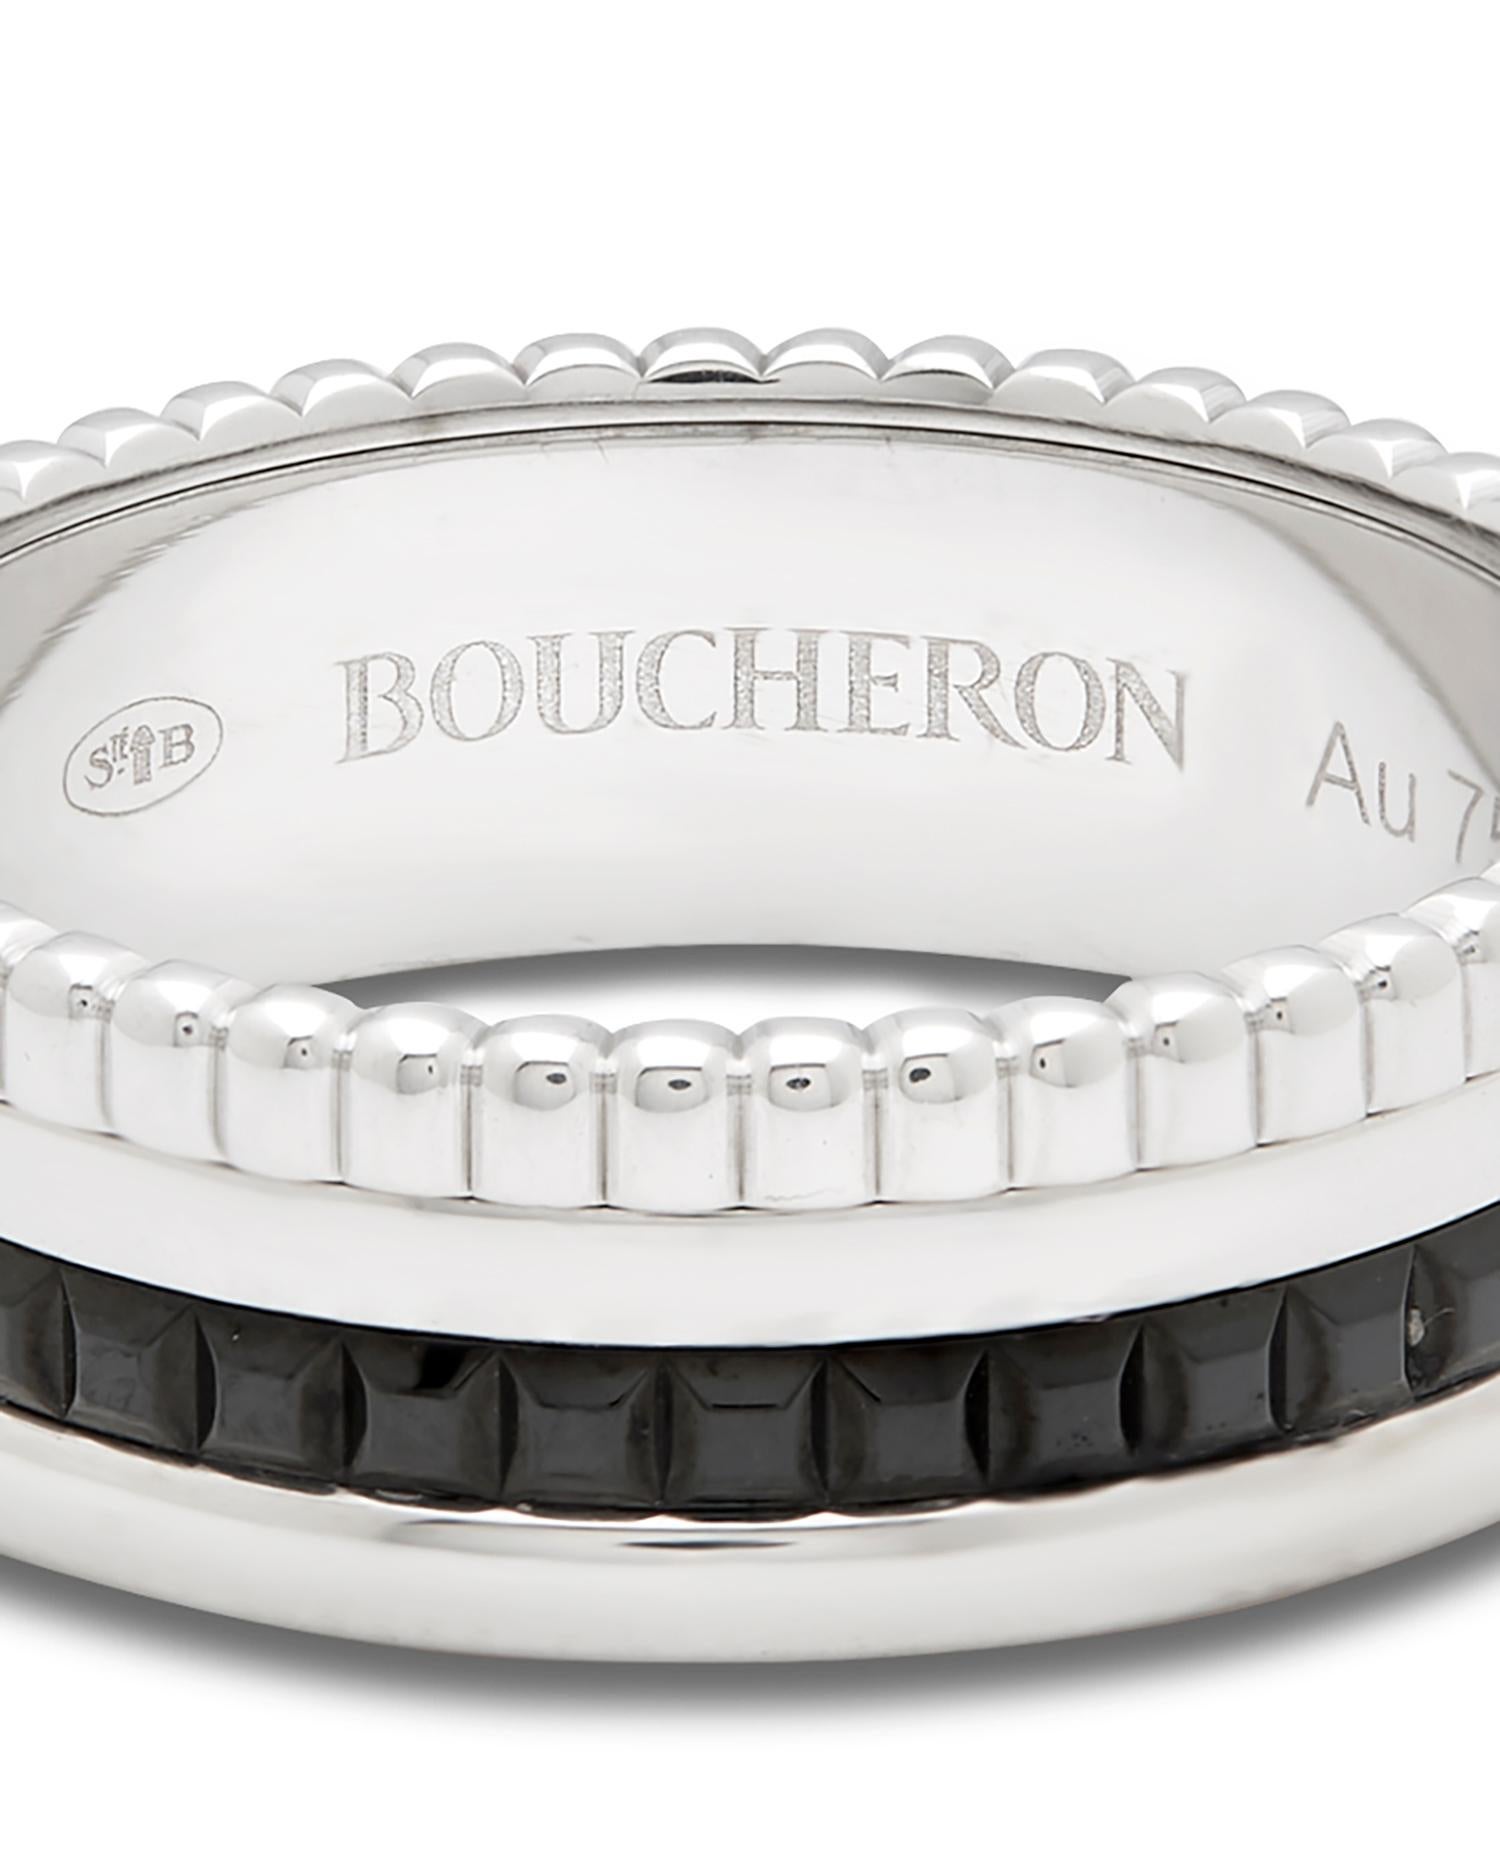 boucheron ring box